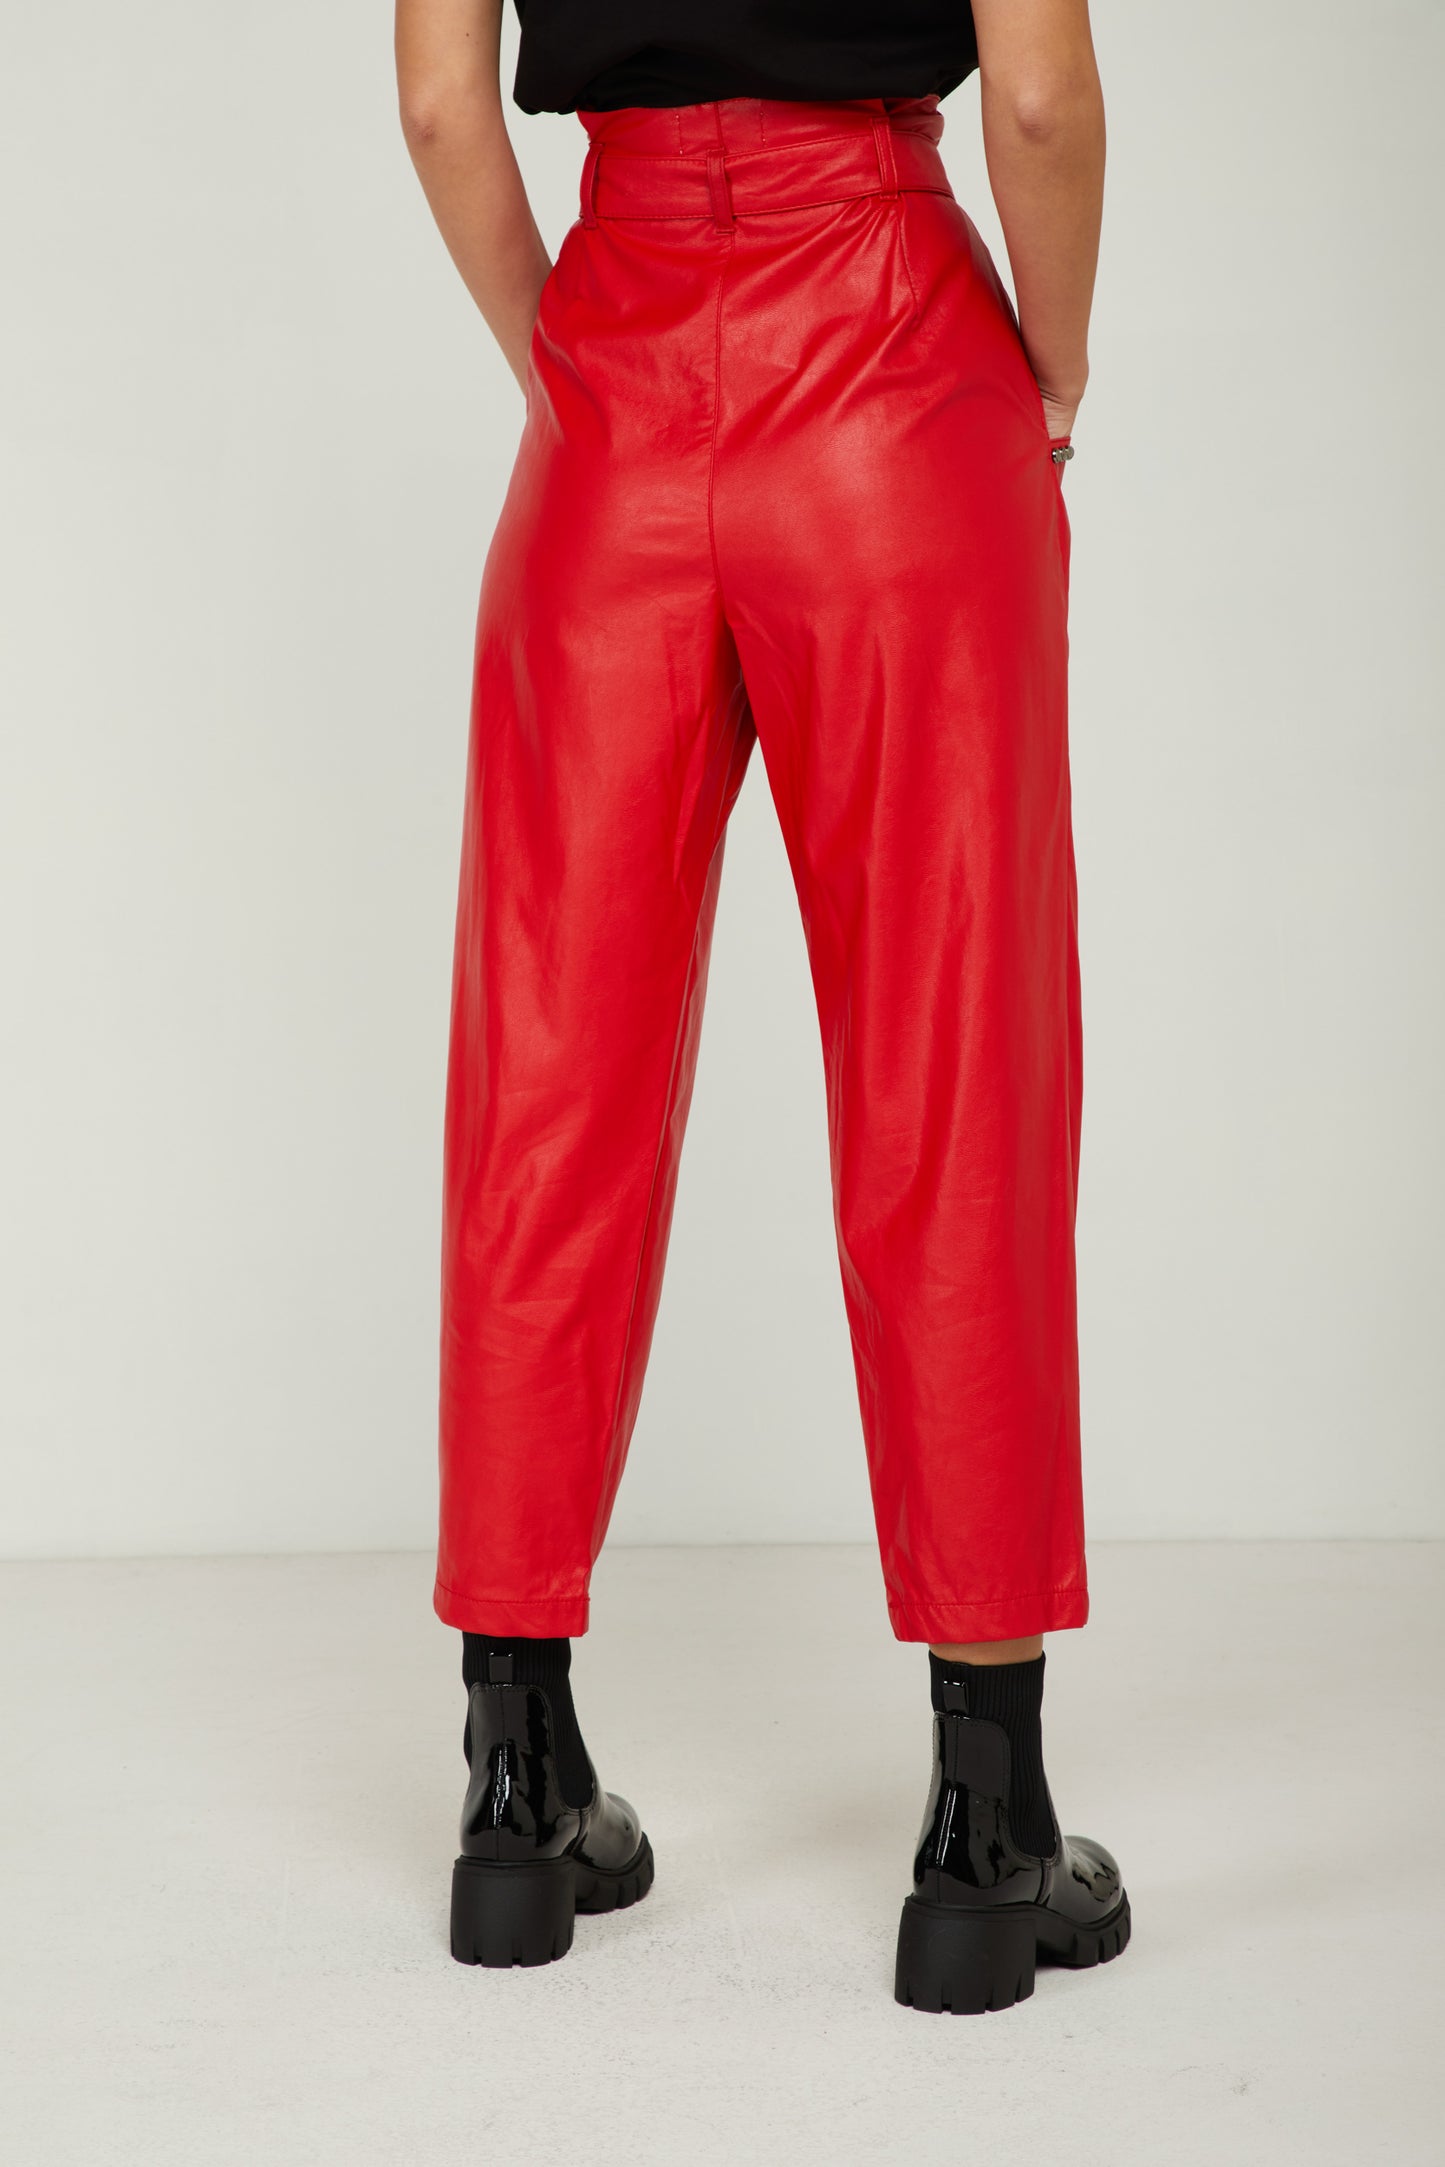 GAELLE Pantalone Rosso con Borchie